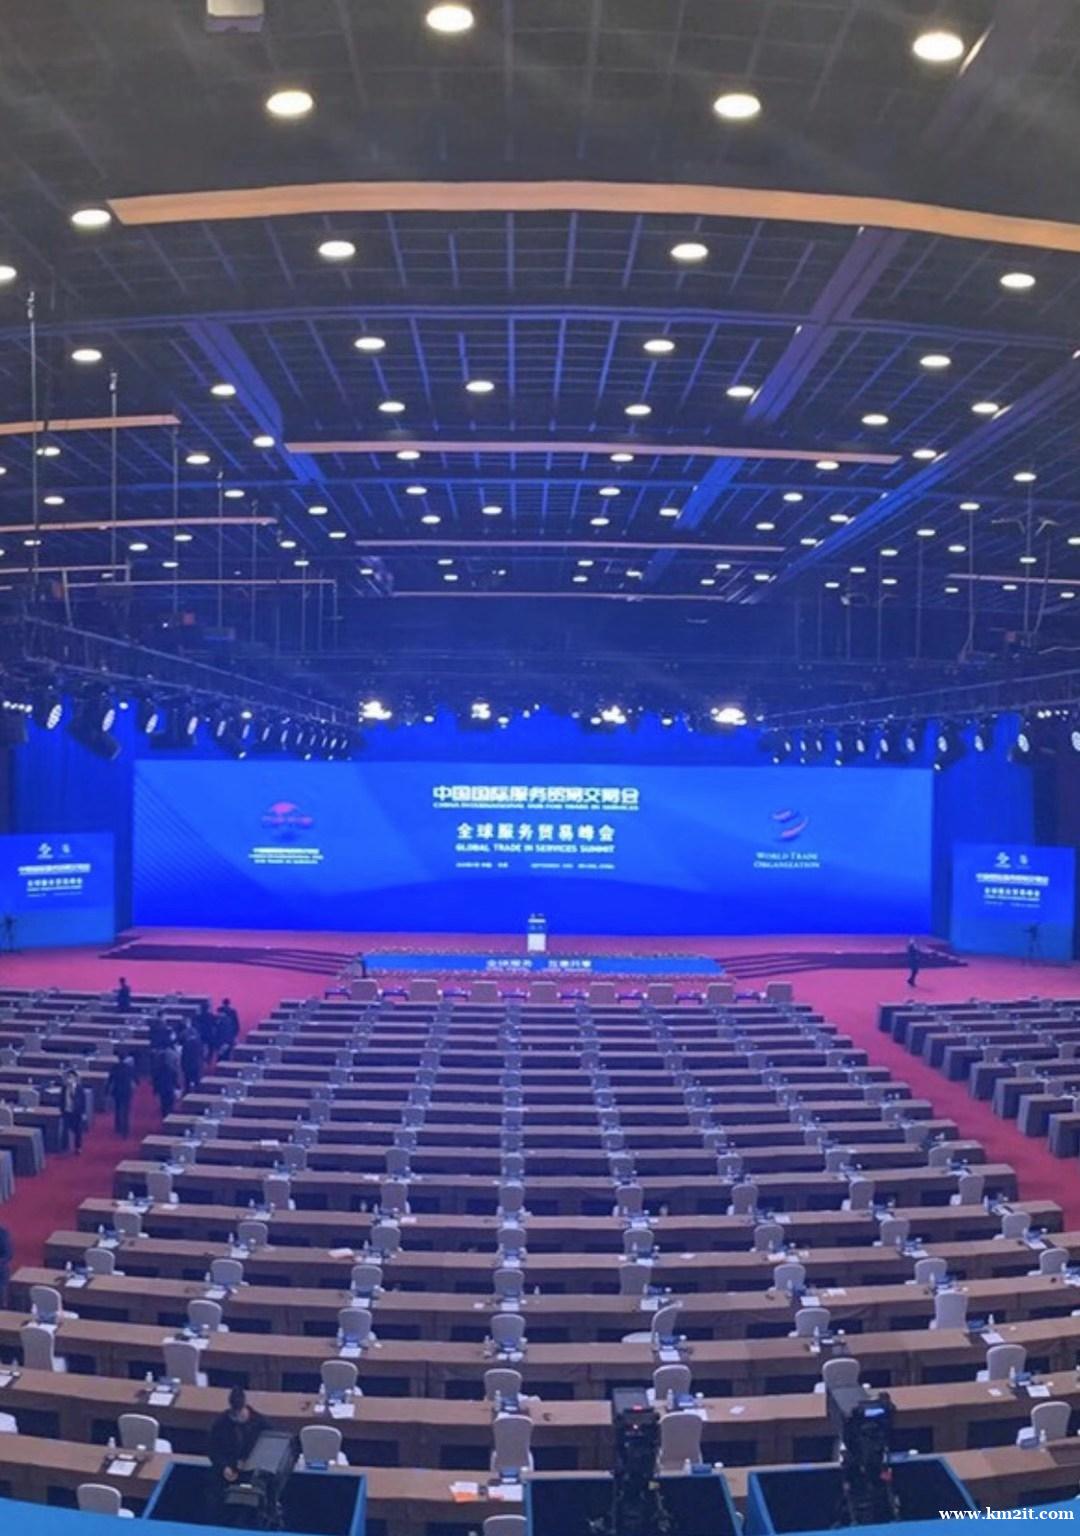 北京会议LED屏租赁、灯光音响出租intercom